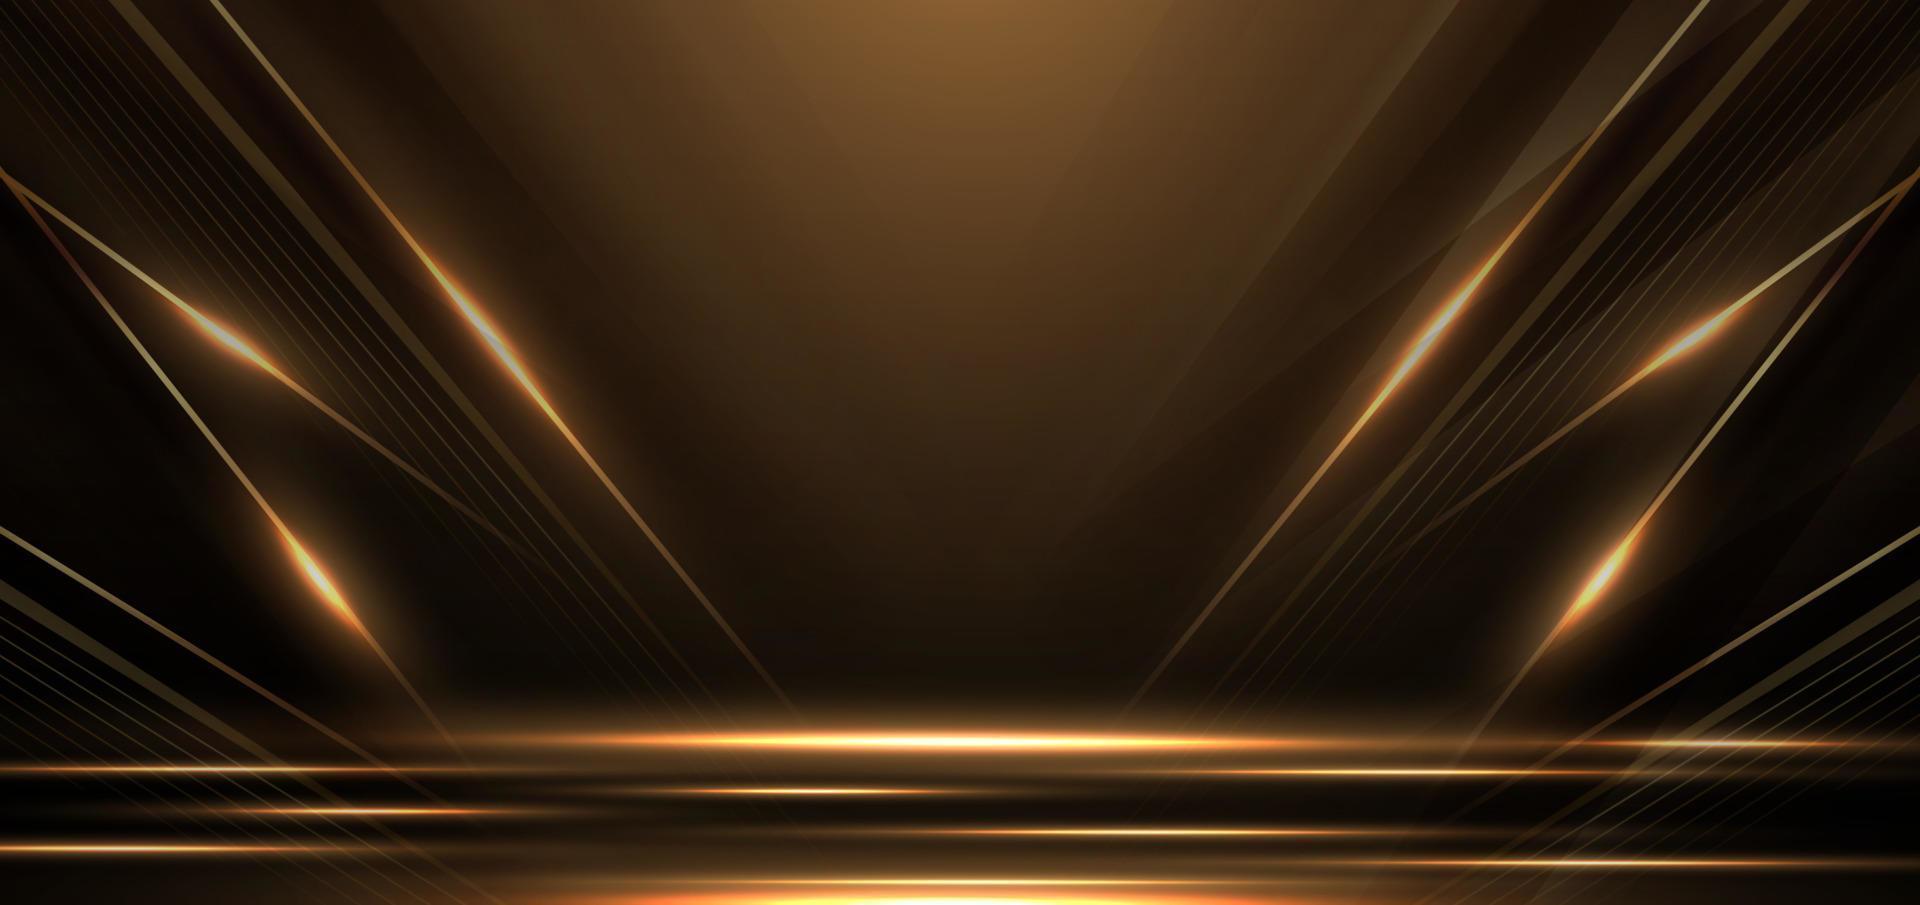 élégante scène dorée en diagonale rougeoyante avec un effet d'éclairage scintillant sur fond noir. vecteur